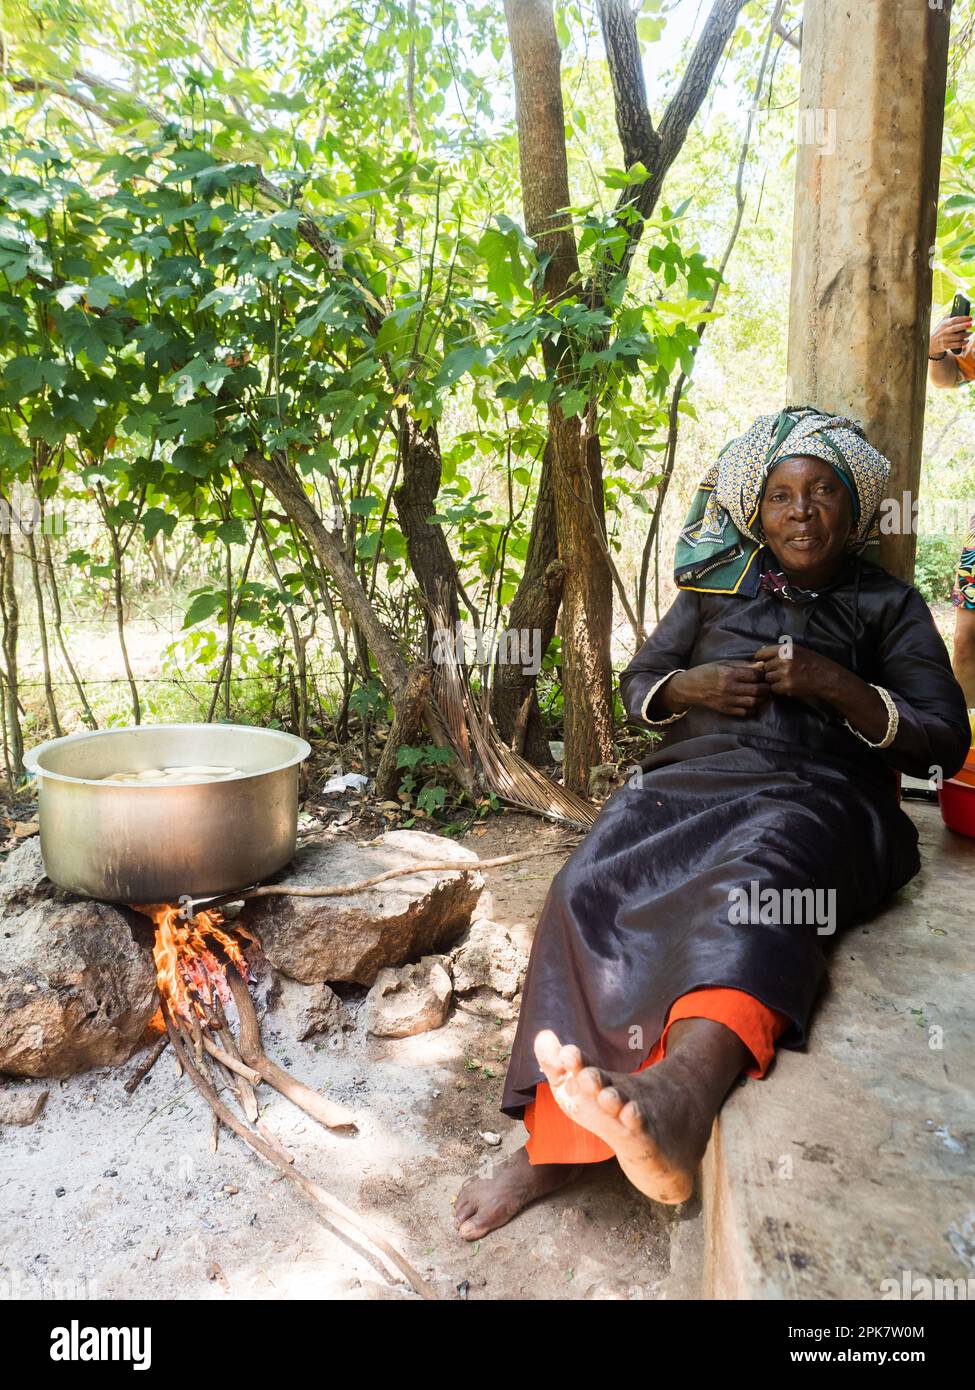 Zanzibar, Tanzanie - Jan, 2021: Portrait d'une femme africaine qui cuisine sur le feu. Afrique Banque D'Images